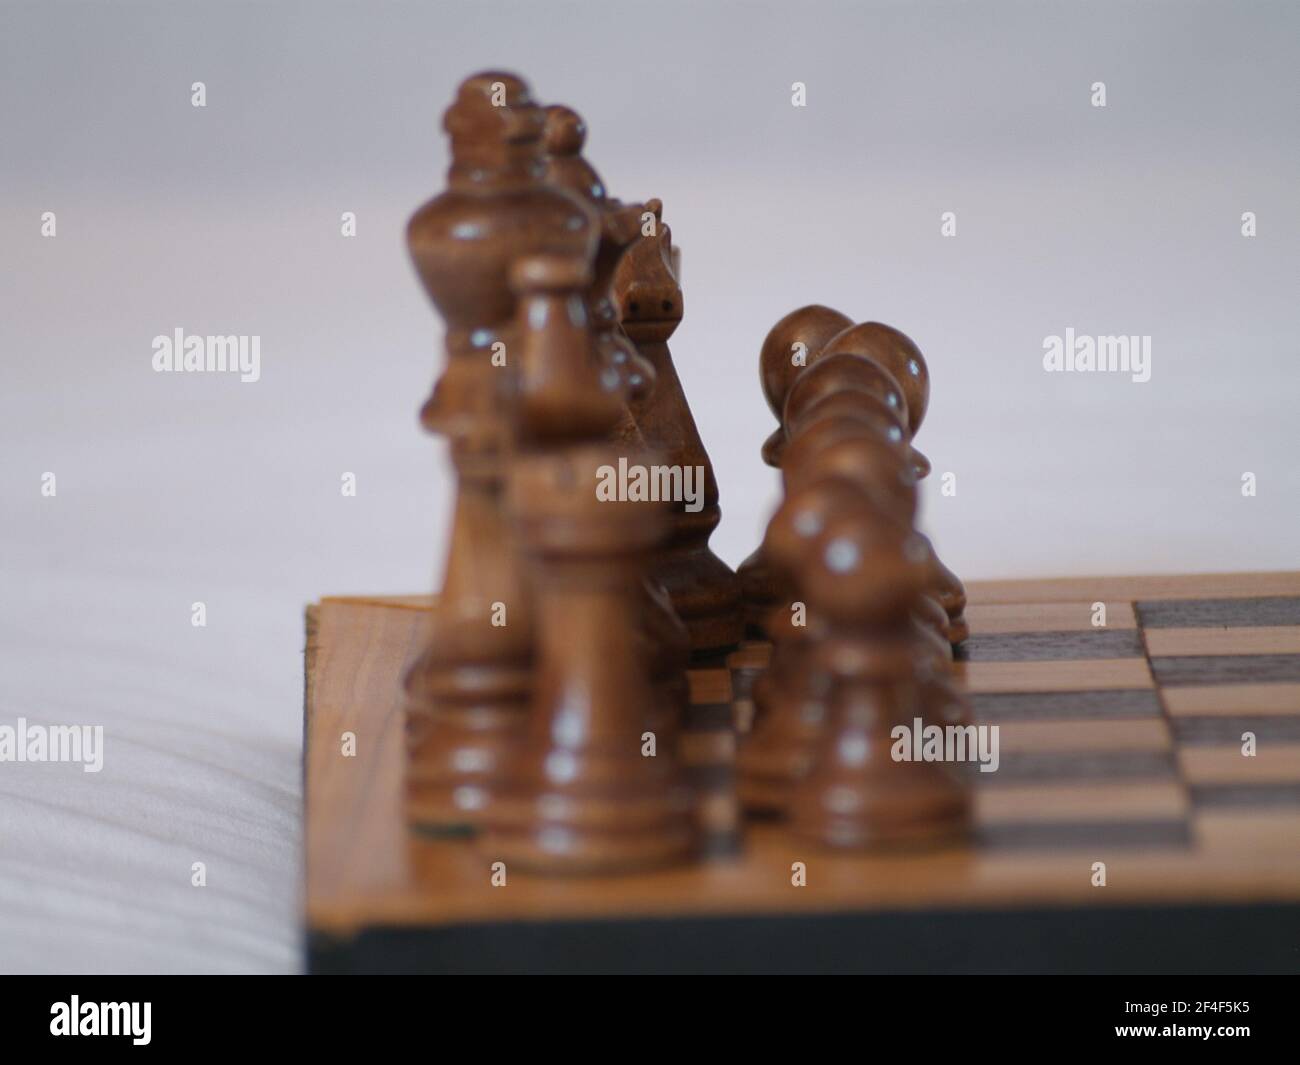 Das Spiel der Könige - Schach. Es schult das strategische Denken. Stock Photo